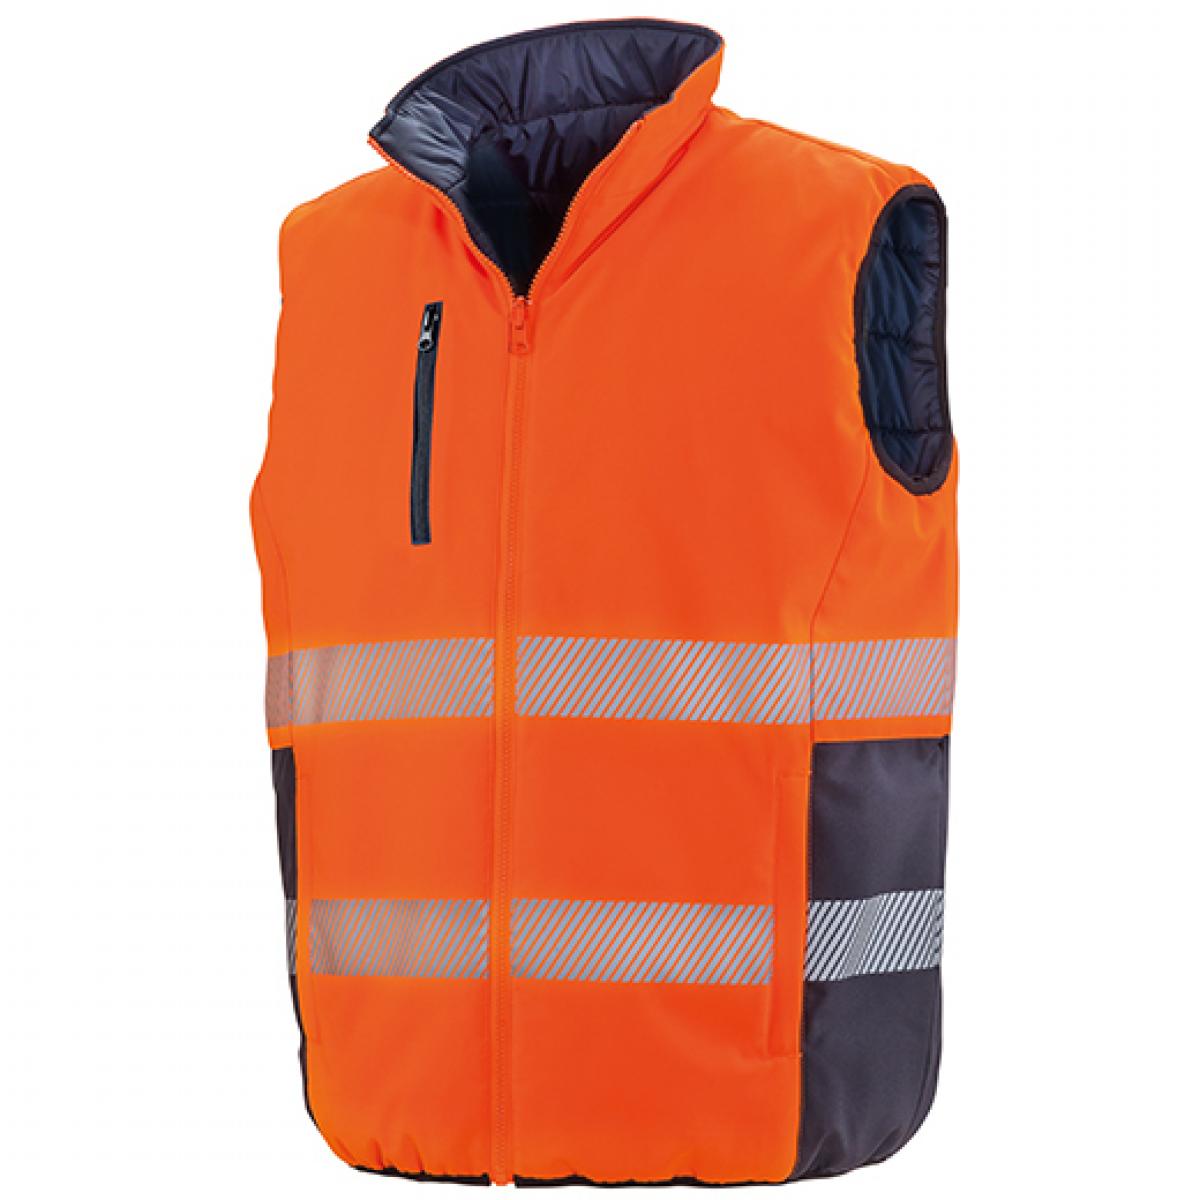 Hersteller: Result Herstellernummer: R332X Artikelbezeichnung: Herren Reversible Soft Padded Safety Gilet Farbe: Fluorescent Orange/Navy